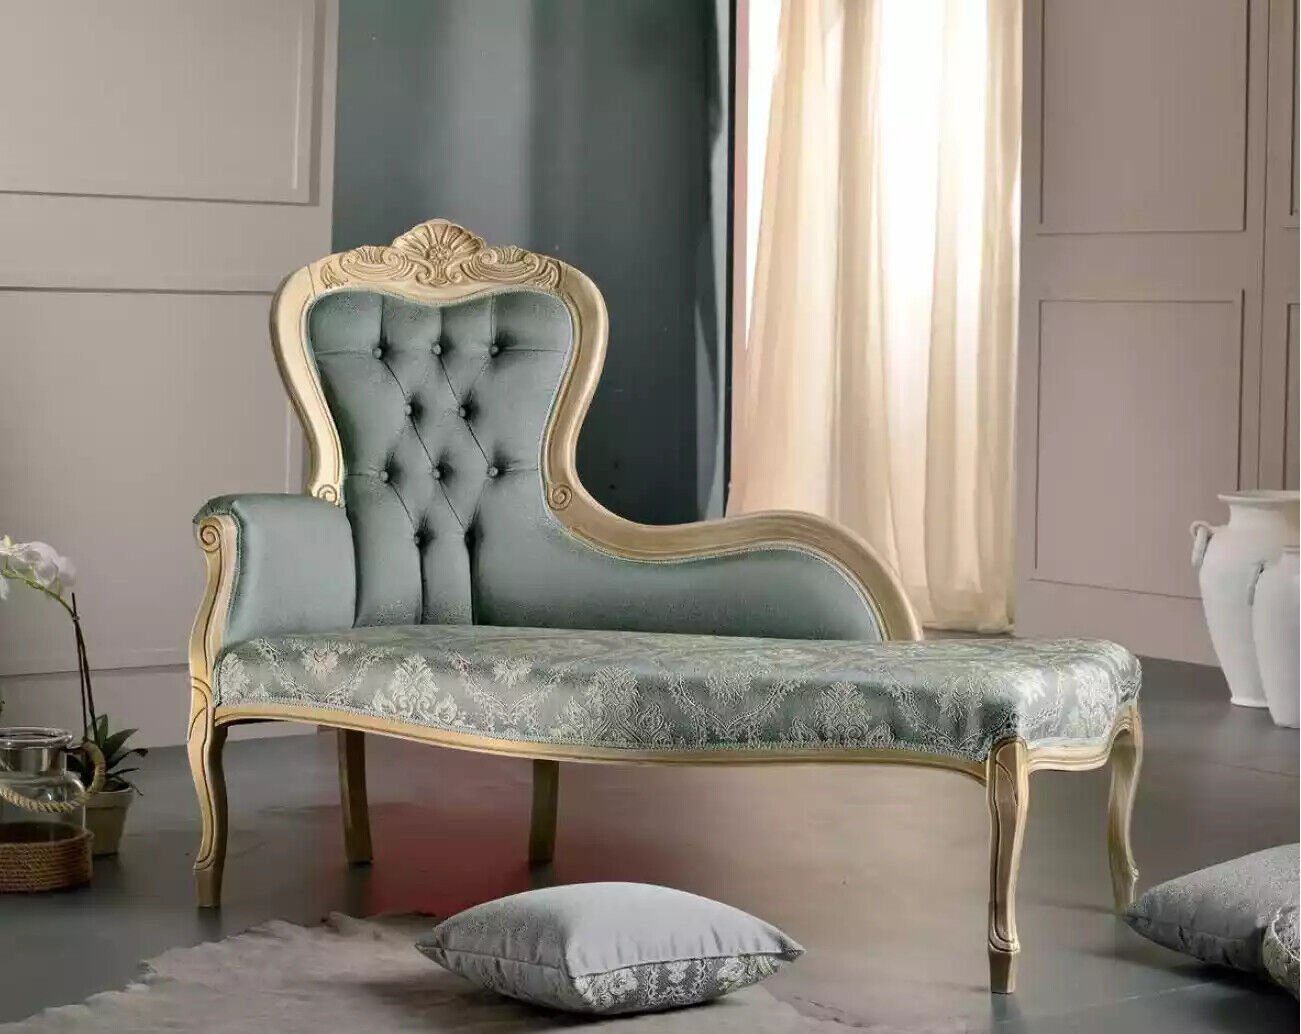 JVmoebel Chaiselongue Luxus Möbel Chaiselongue Wohnzimmer Klassischer Design Textil, 1 Teile, Made in Italy